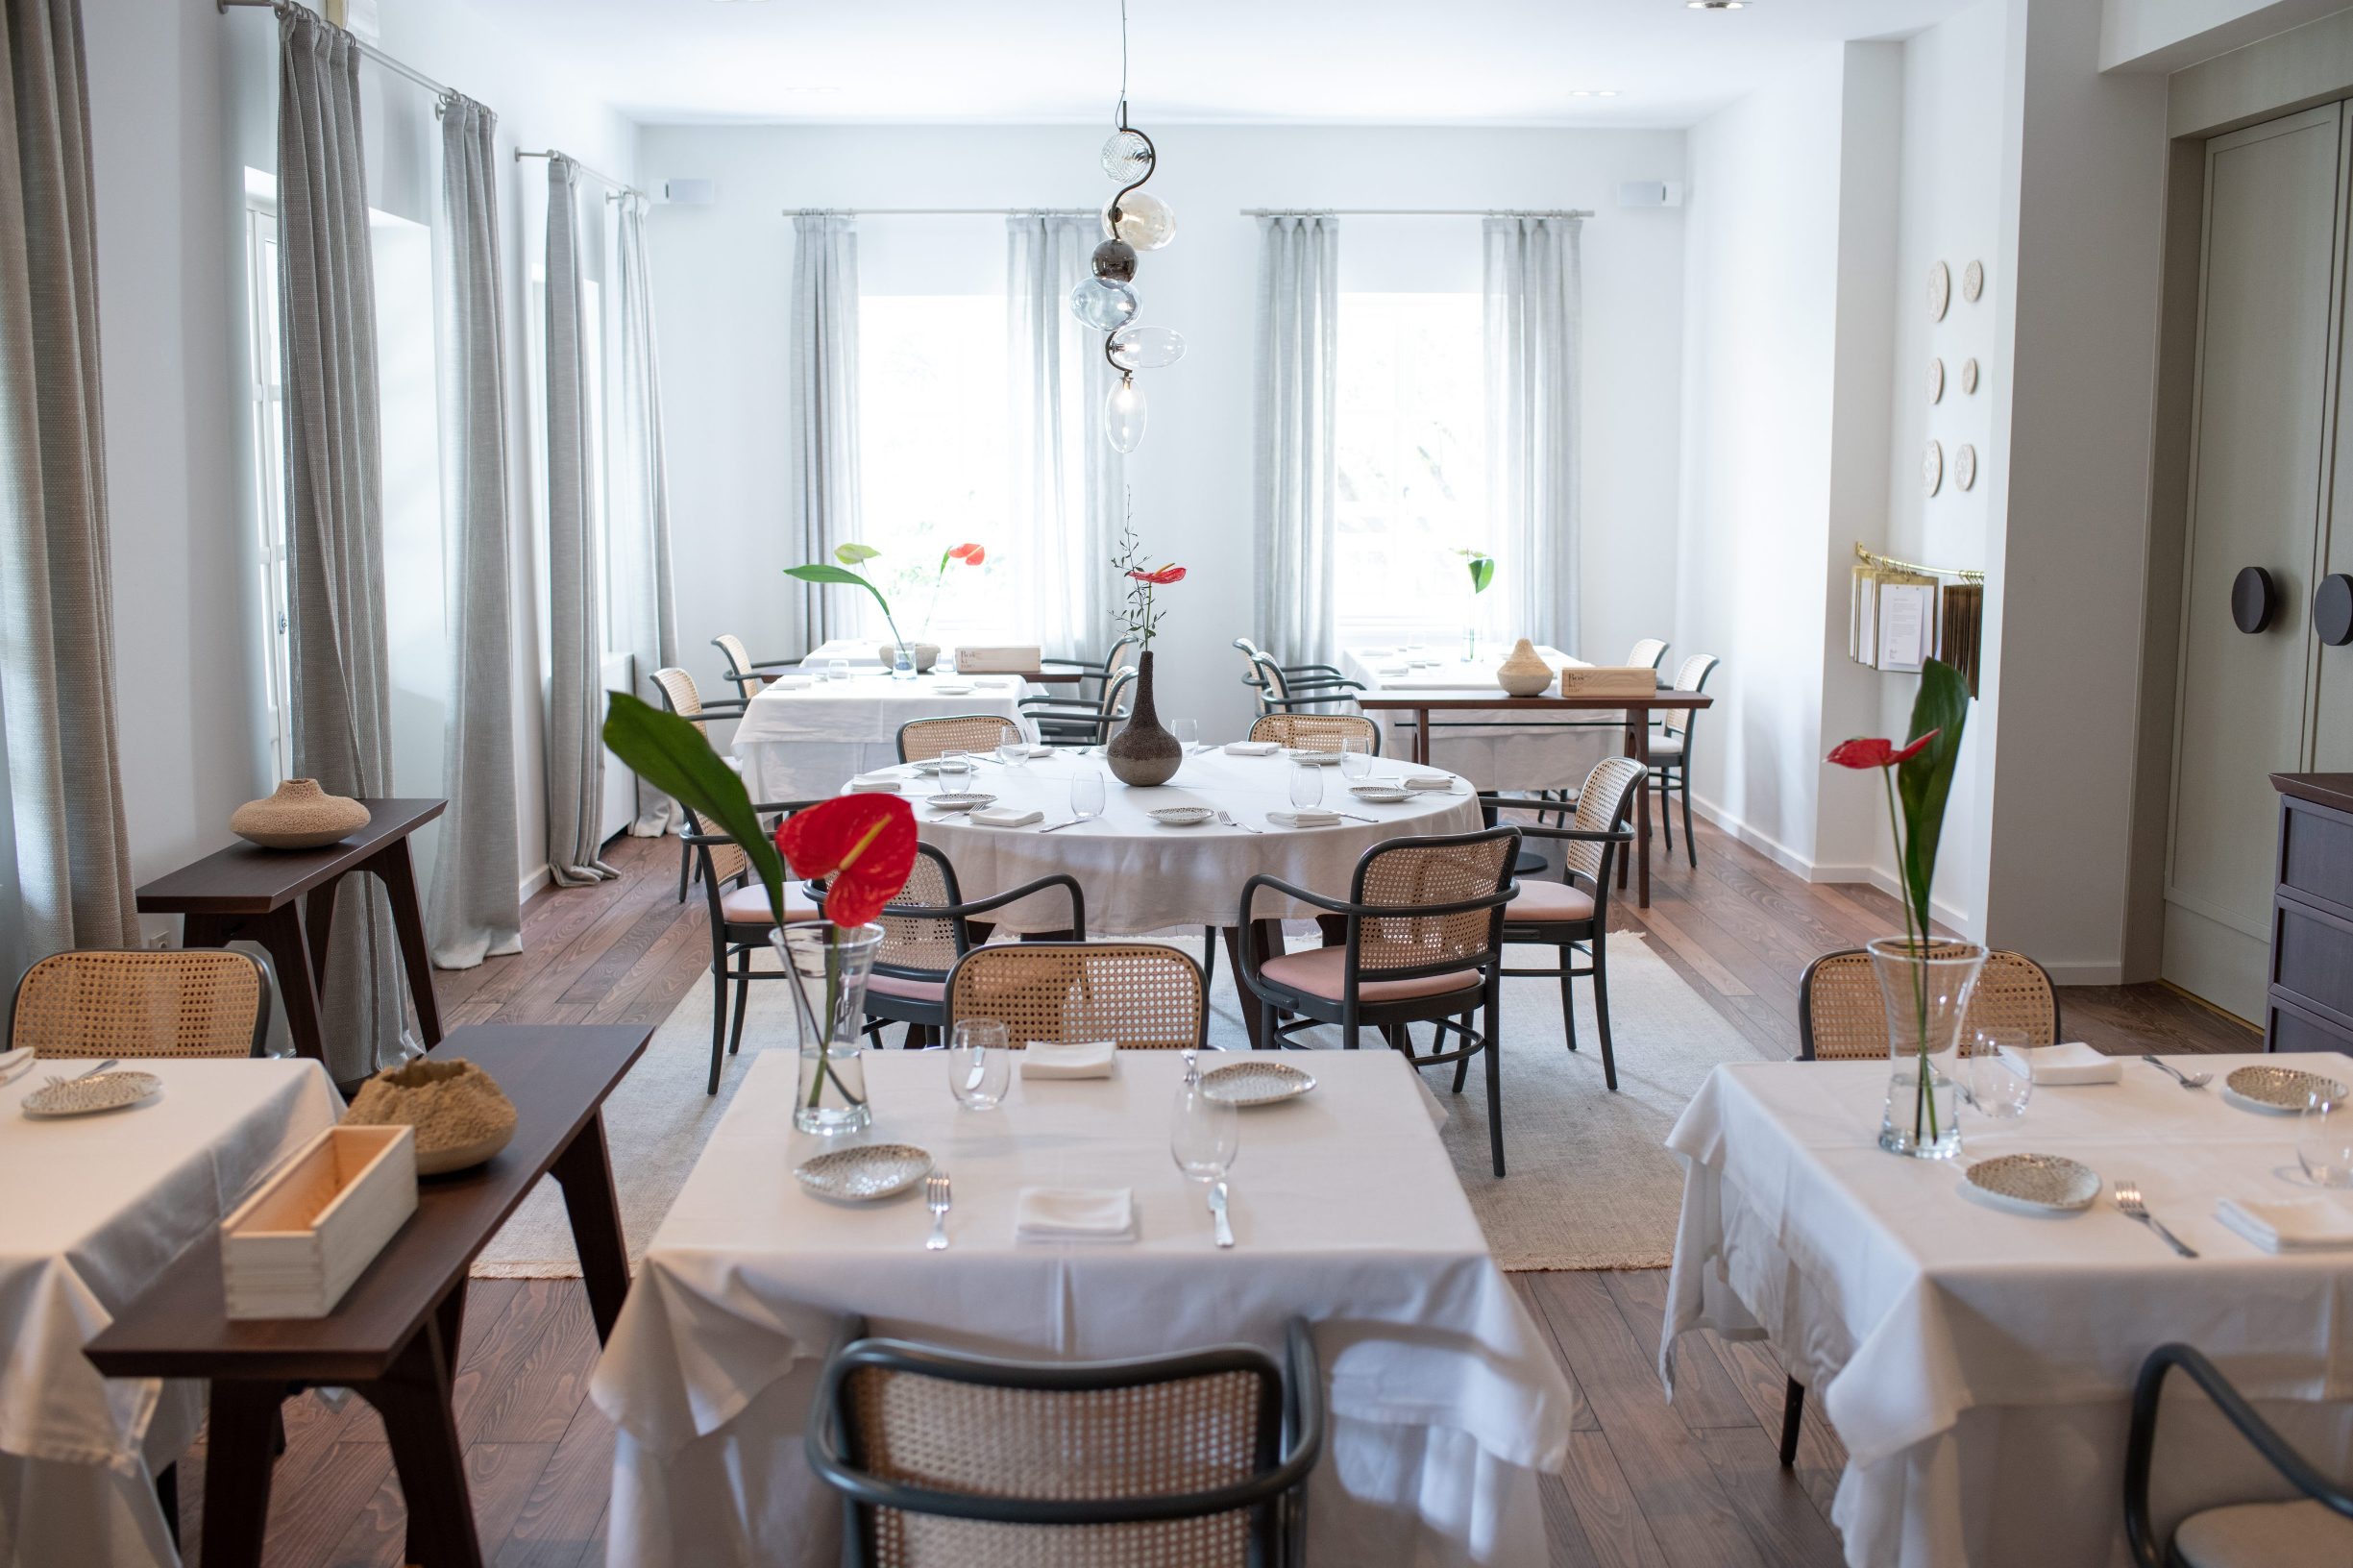 Zagreb, 290220.
Hotel-vinarija-restoran Boskinac sa Paga dobitnik je Michelinove zvjezdice za 2020. godinu.
Foto:  / Cropix
